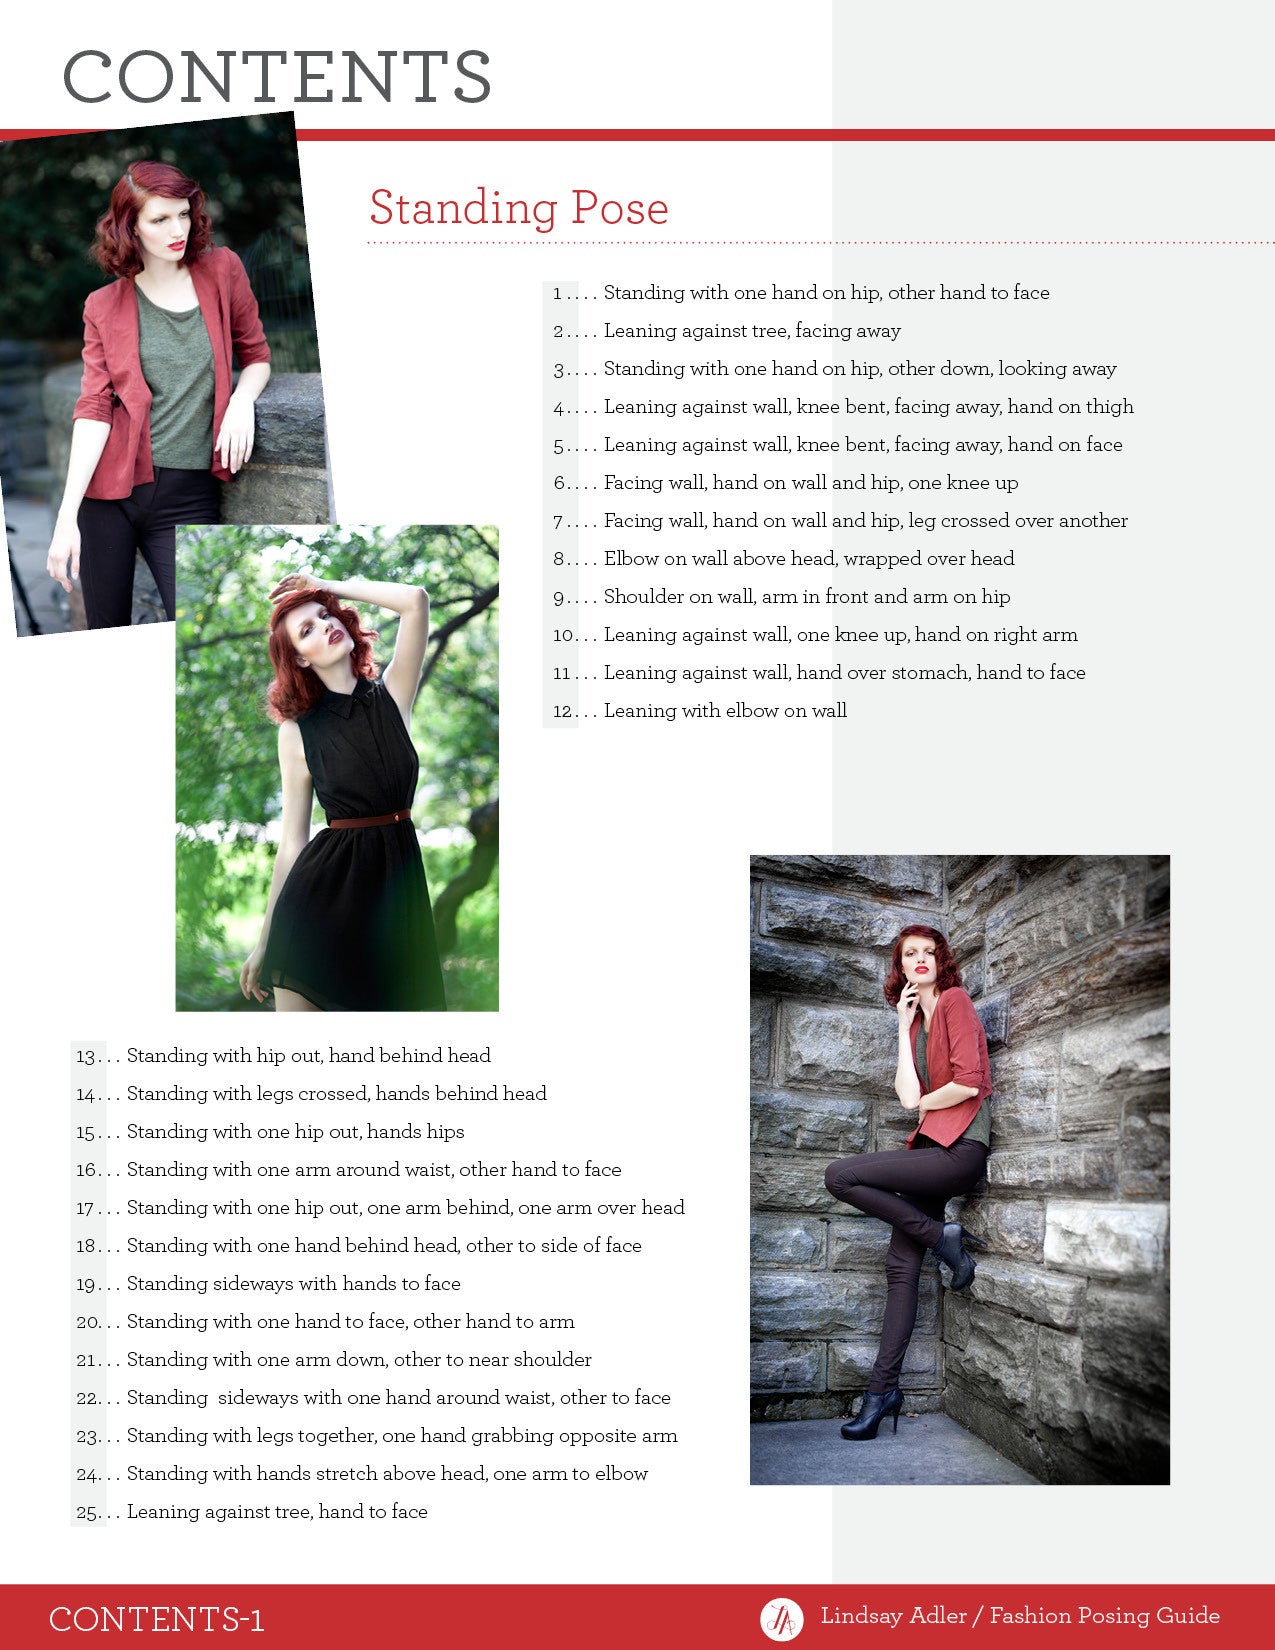 boudoir posing guide lindsay adler pdf